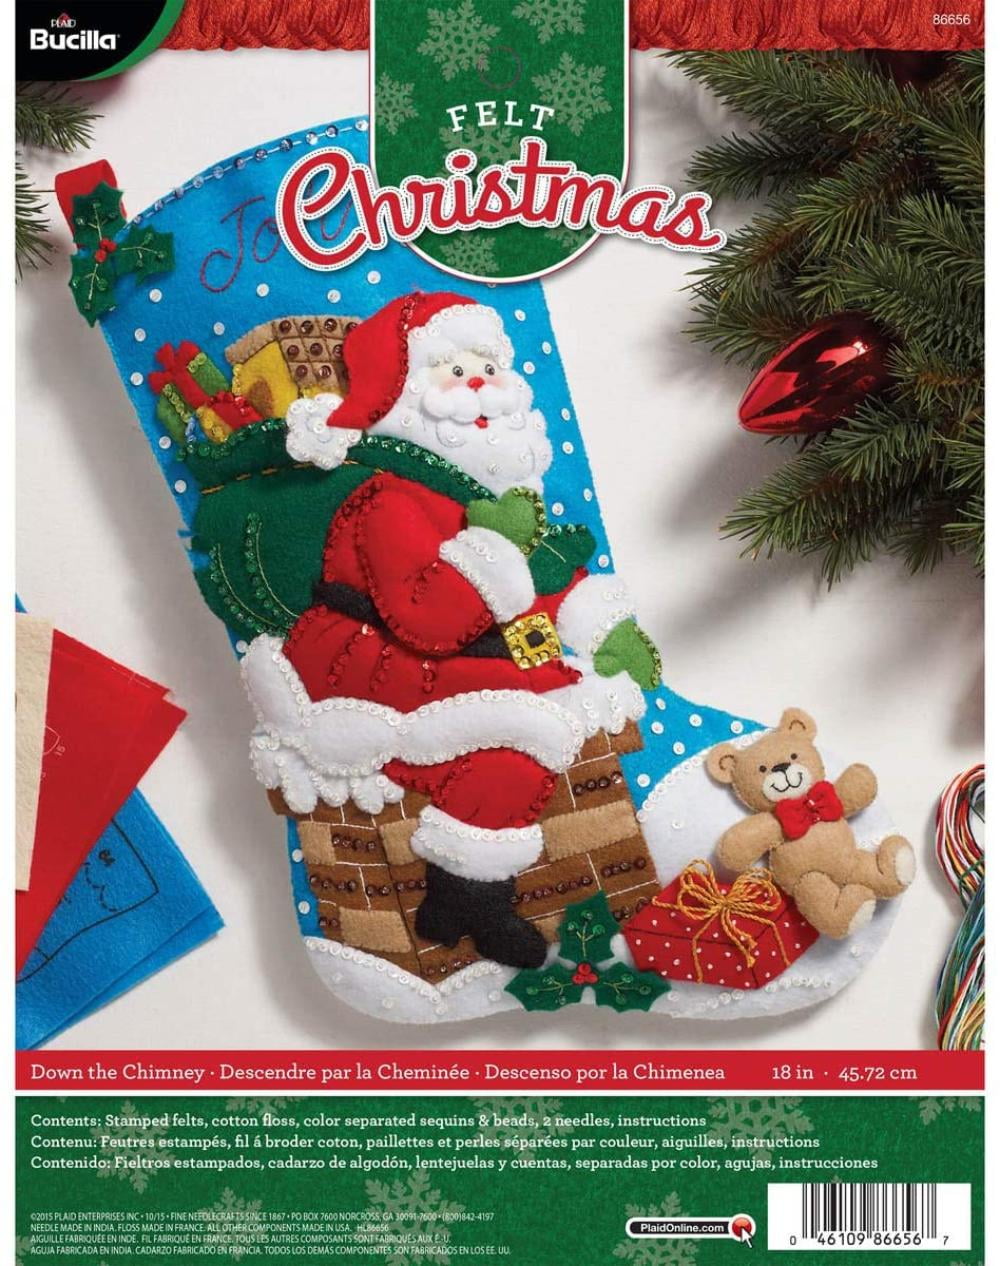 Christmas Bucilla STOCKING FELT Applique Holiday Kit,ROCK & ROLL SANTA,84587,18"